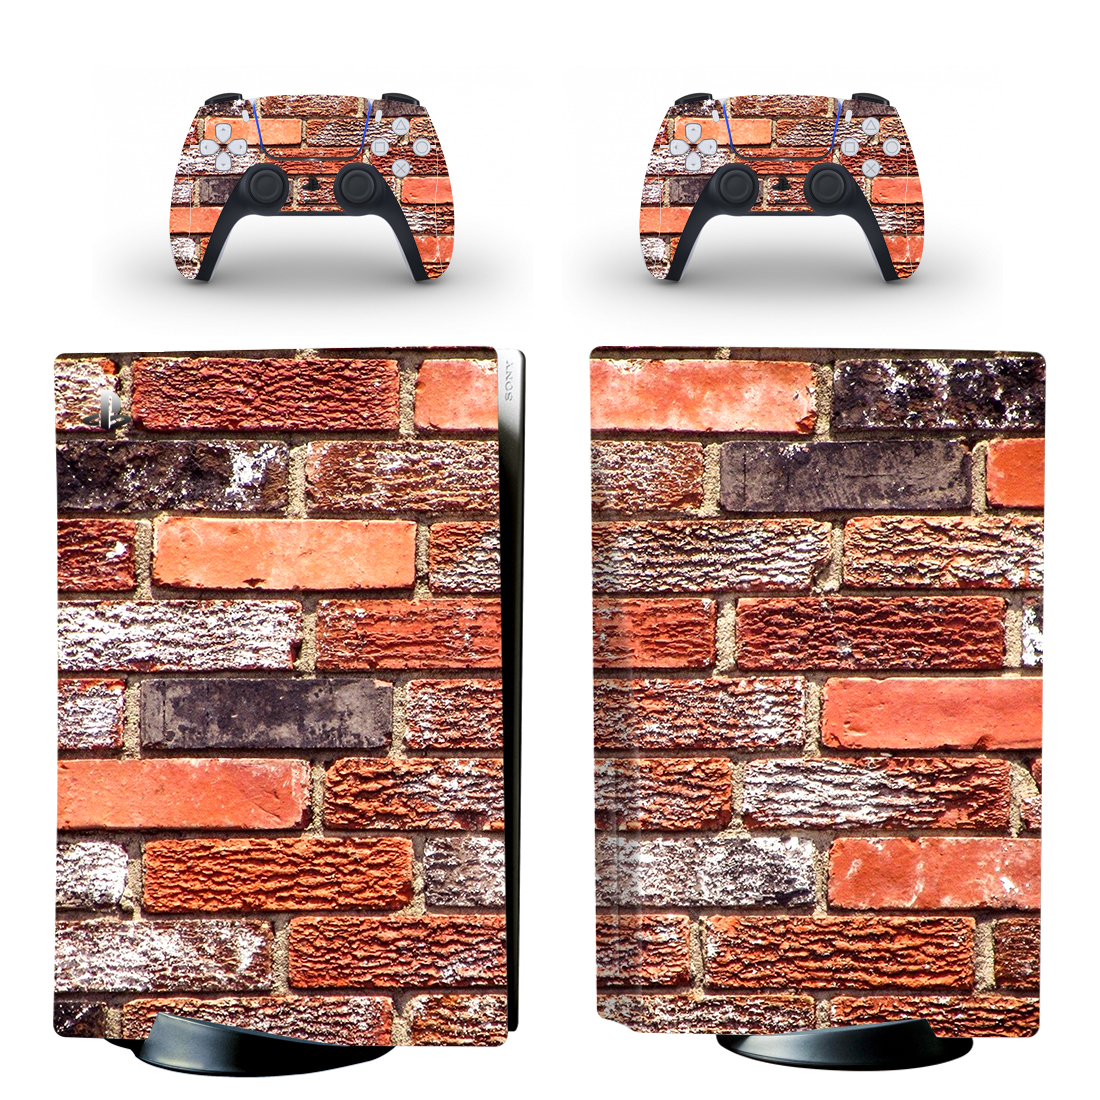 Old Bricks Texture PS5 Skin Sticker